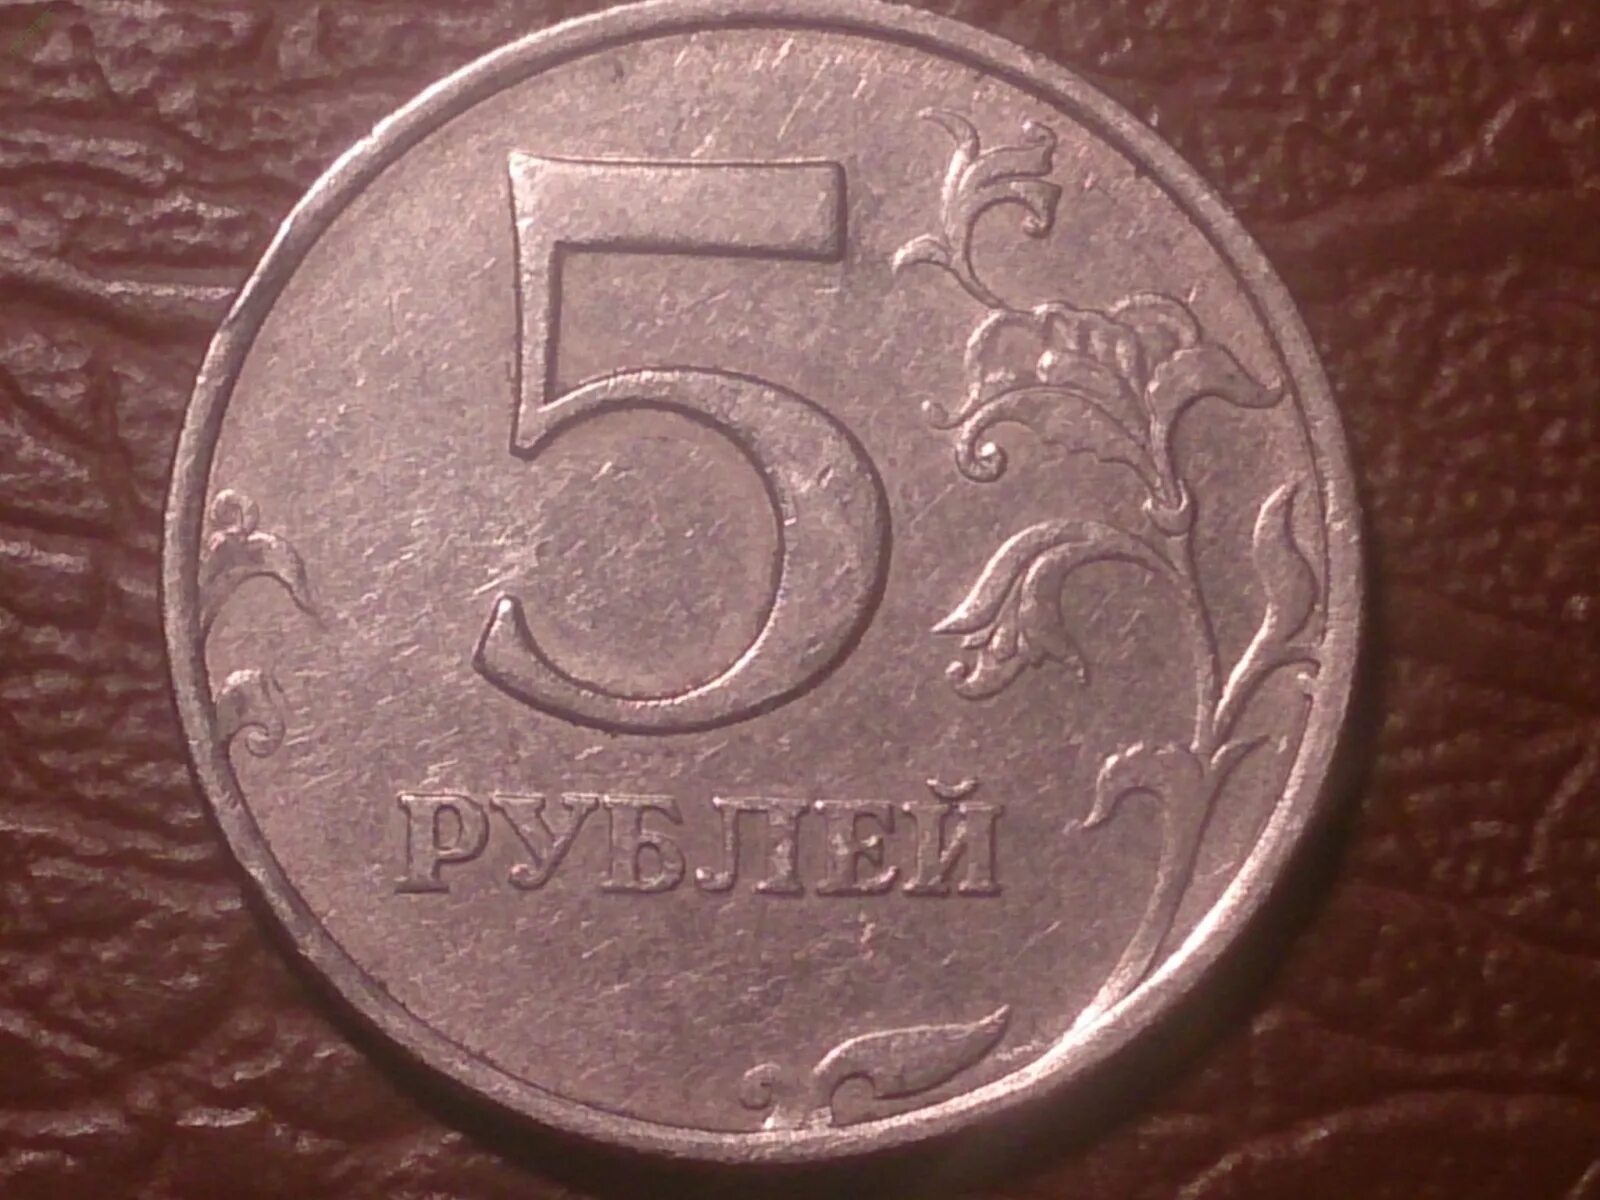 5 рублей плюс 5 рублей. 5 Рублей 1997 ММД СПМД. 5 Рублей 1997 ММД. 5 Рублей 1997 год Санкт Петербургский монетный двор. 5 Рублей 1997 СПМД.